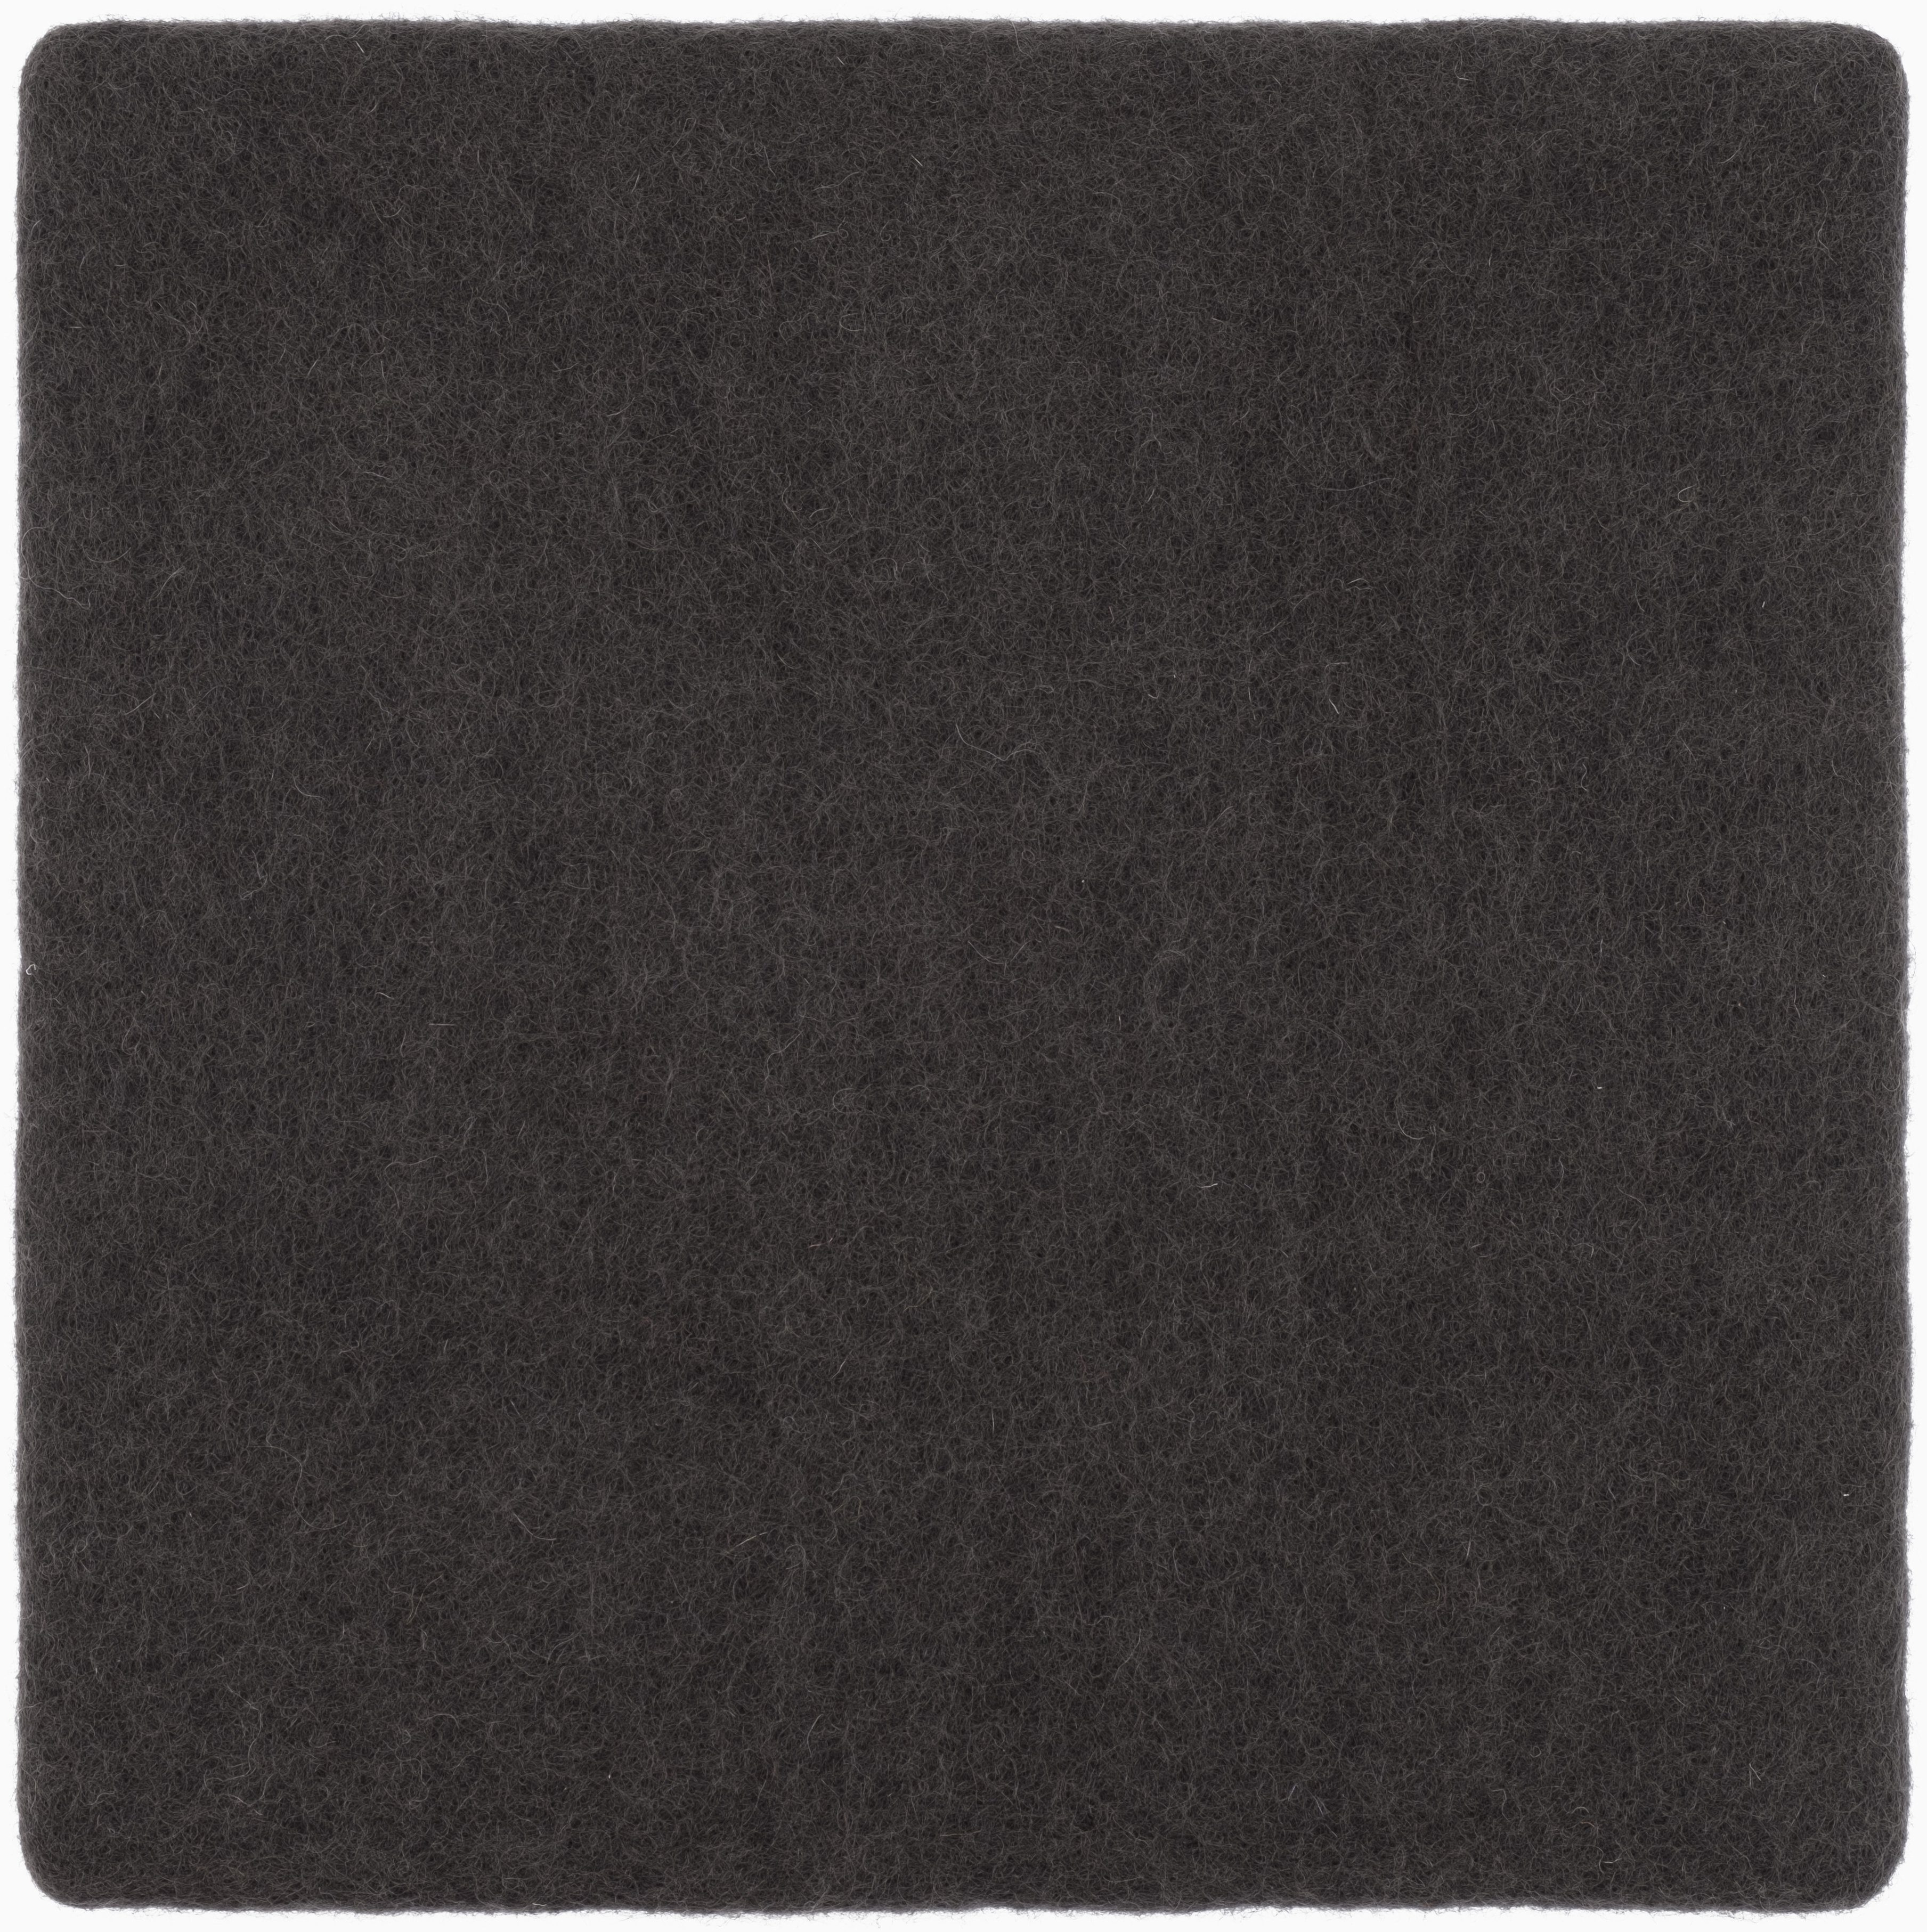 myfelt Stuhlkissen Filz Sitzauflage quadratisch - 36 x 36 cm, 100% reiner Schurwolle, quadratisch, schmutzabweisend Kuno